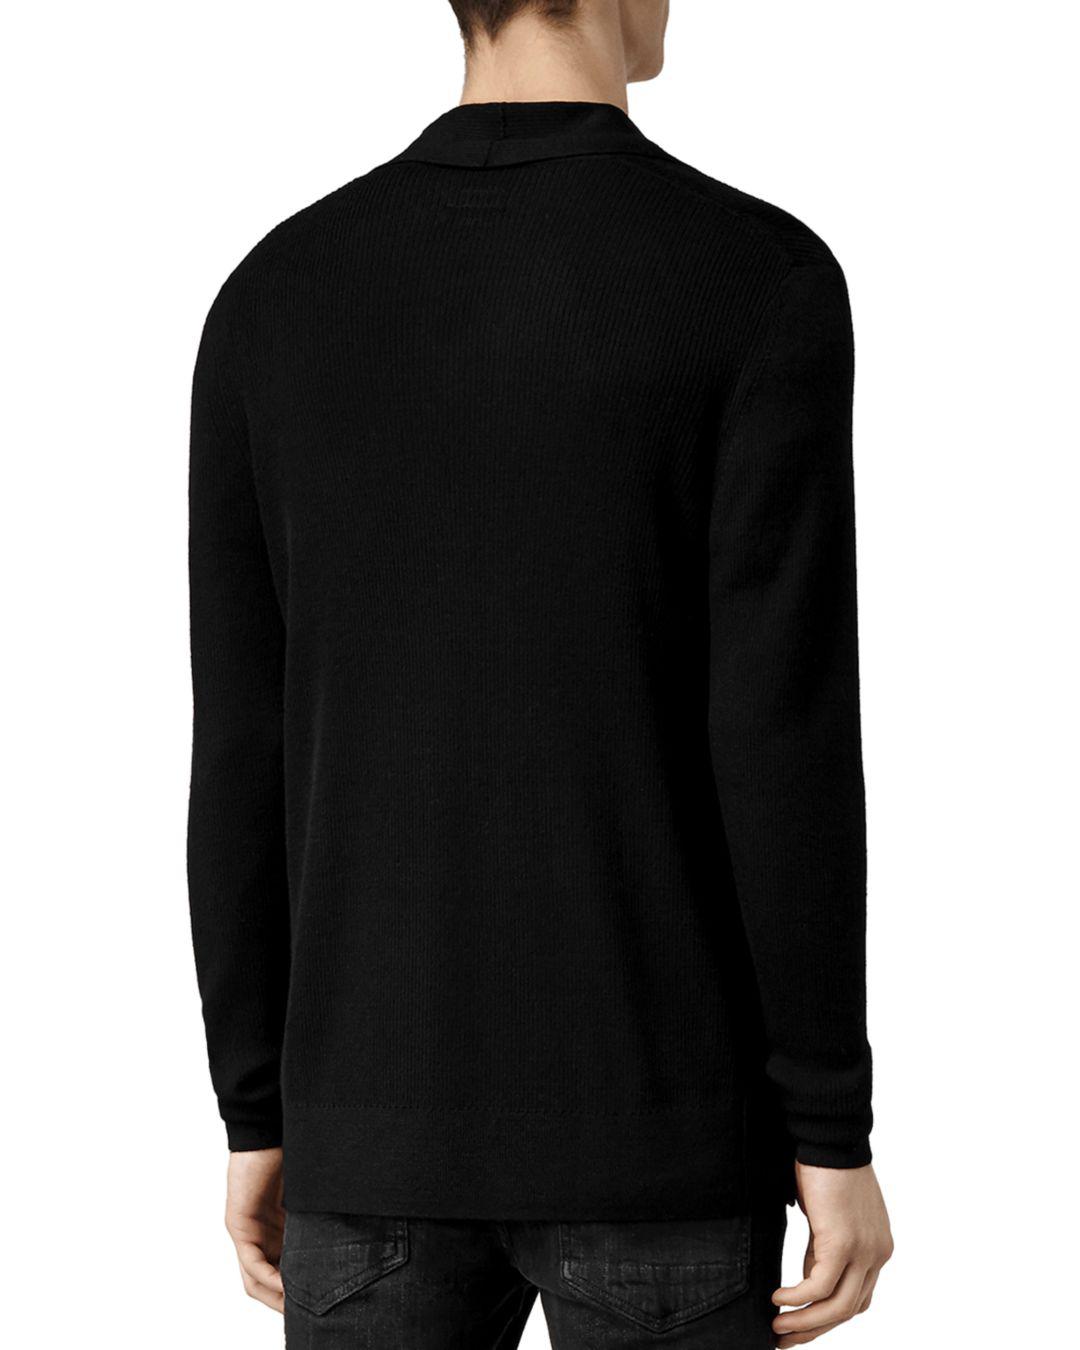 AllSaints Mode Merino Wool Open Cardigan Sweater in Black for Men - Lyst